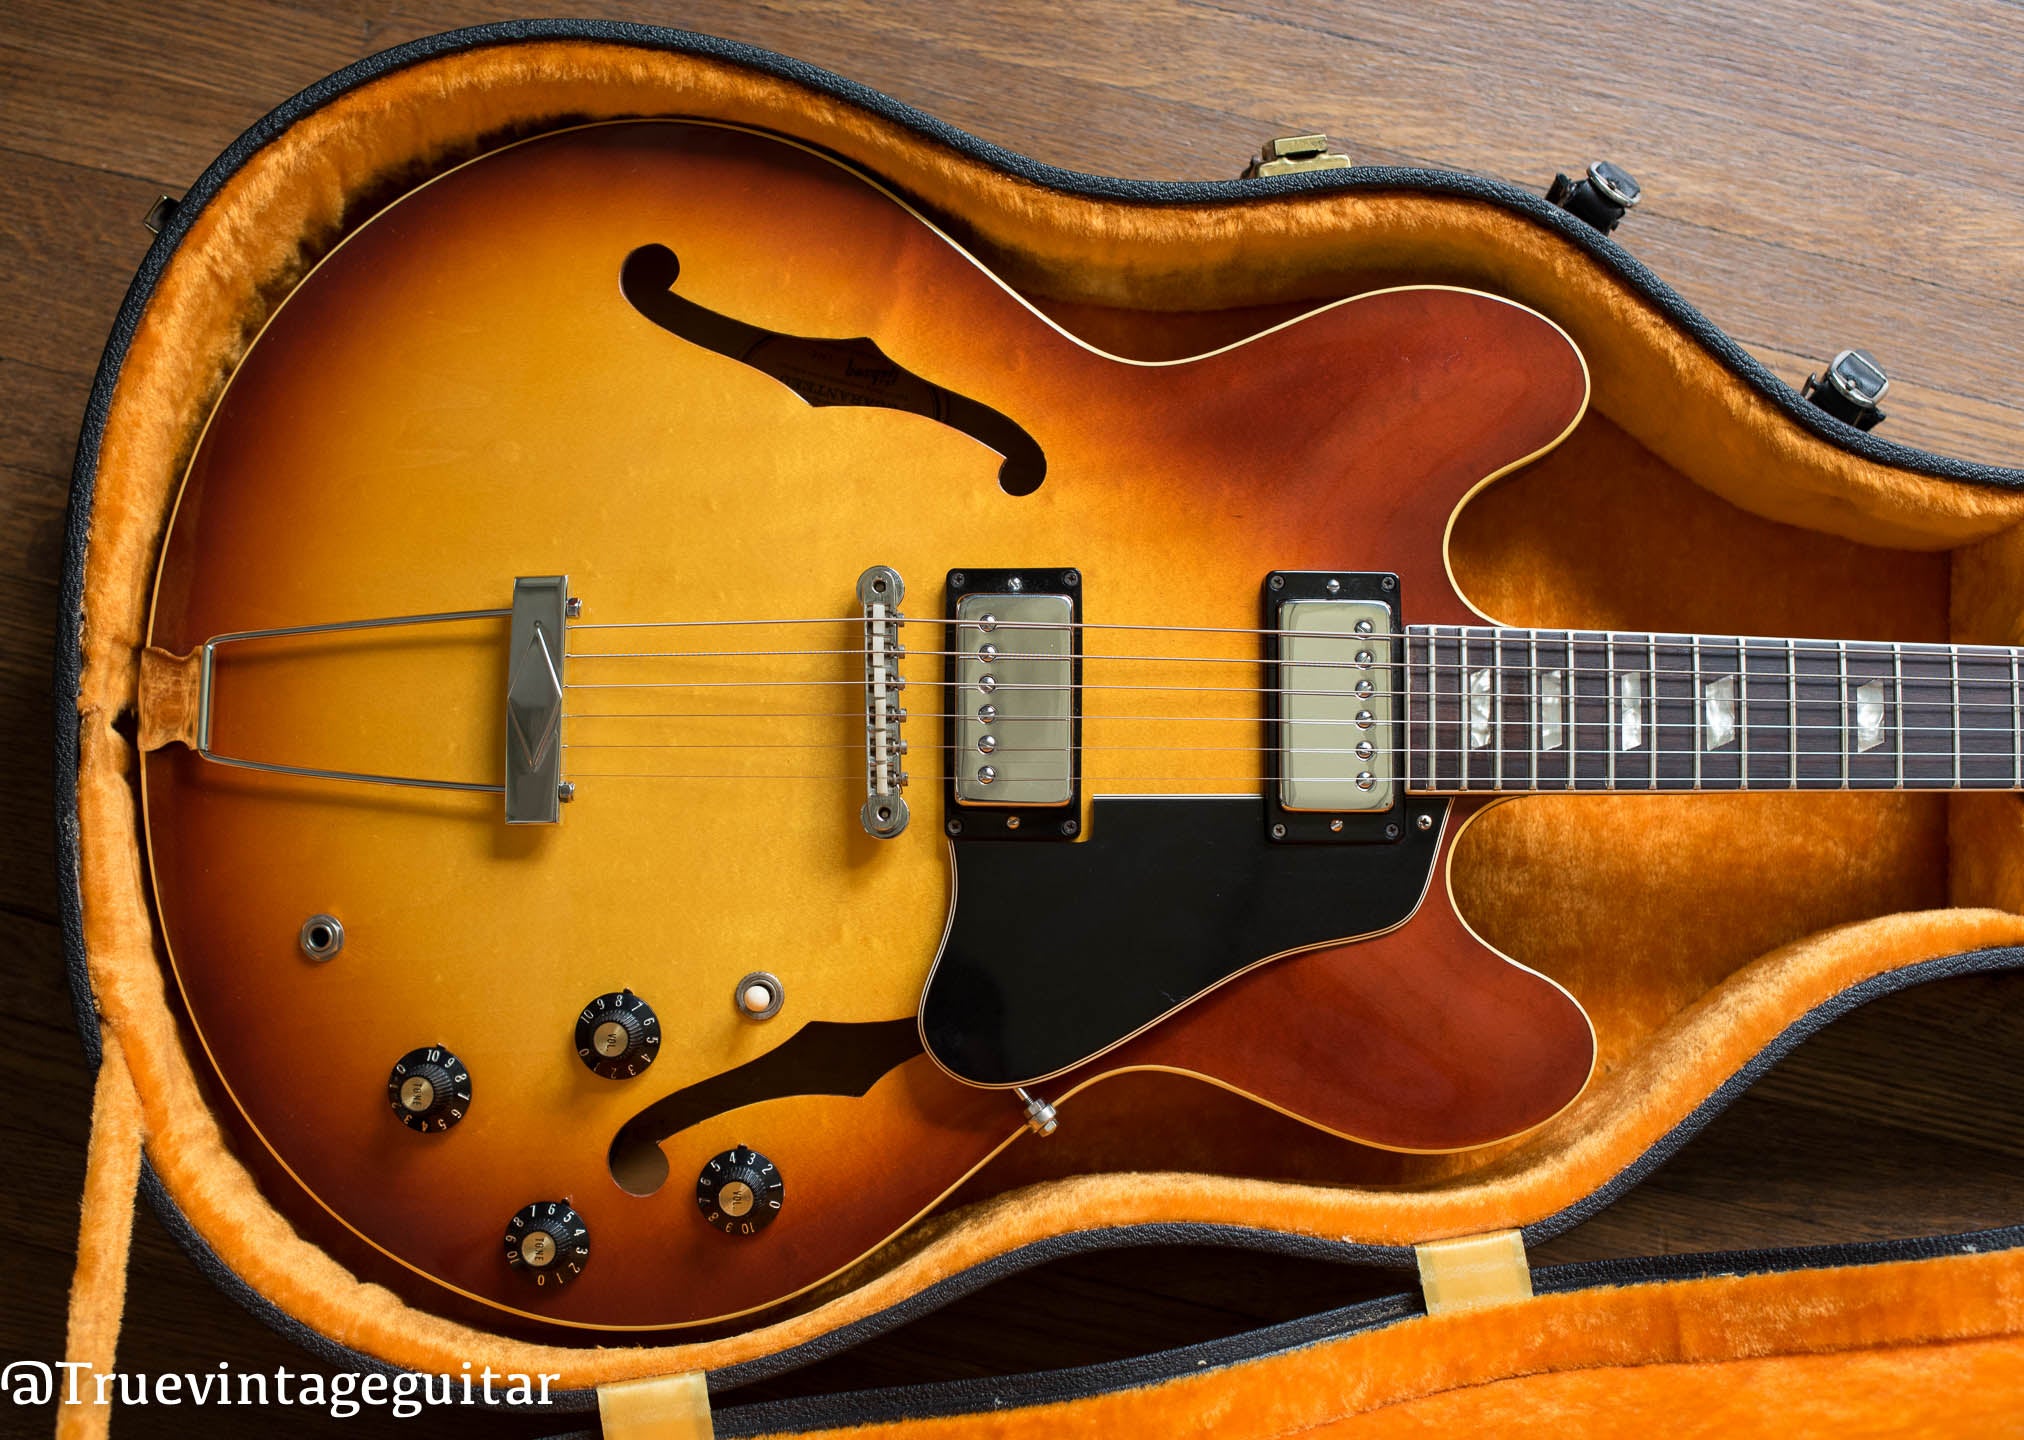 Vintage 1969 Gibson ES-335 td electric guitar in original hardshell case